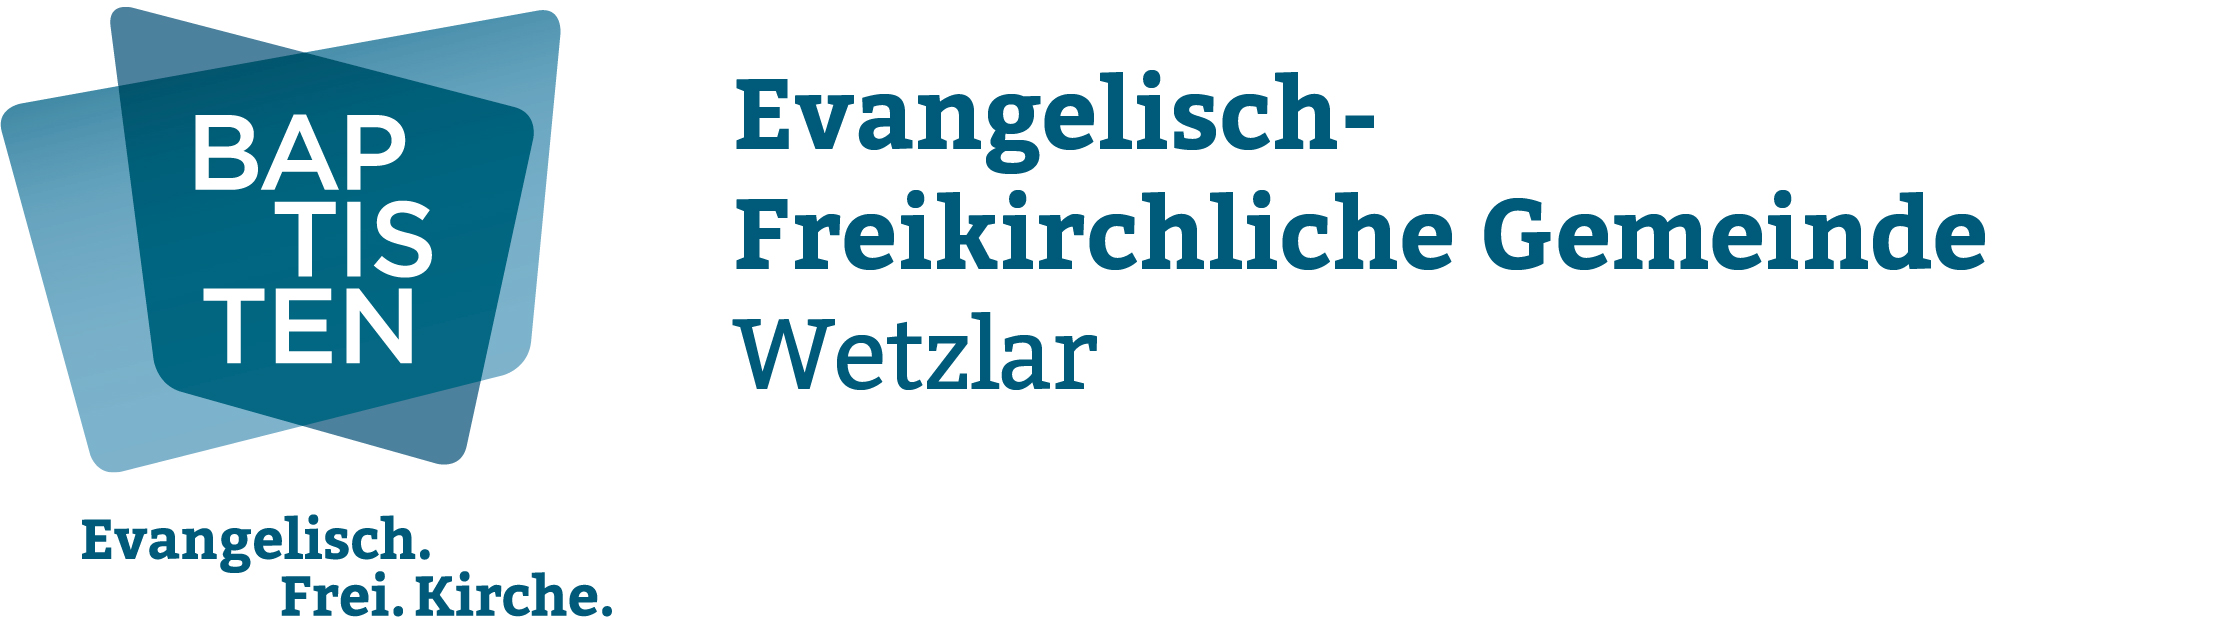 Evangelisch-Freikirchliche Gemeinde Wetzlar